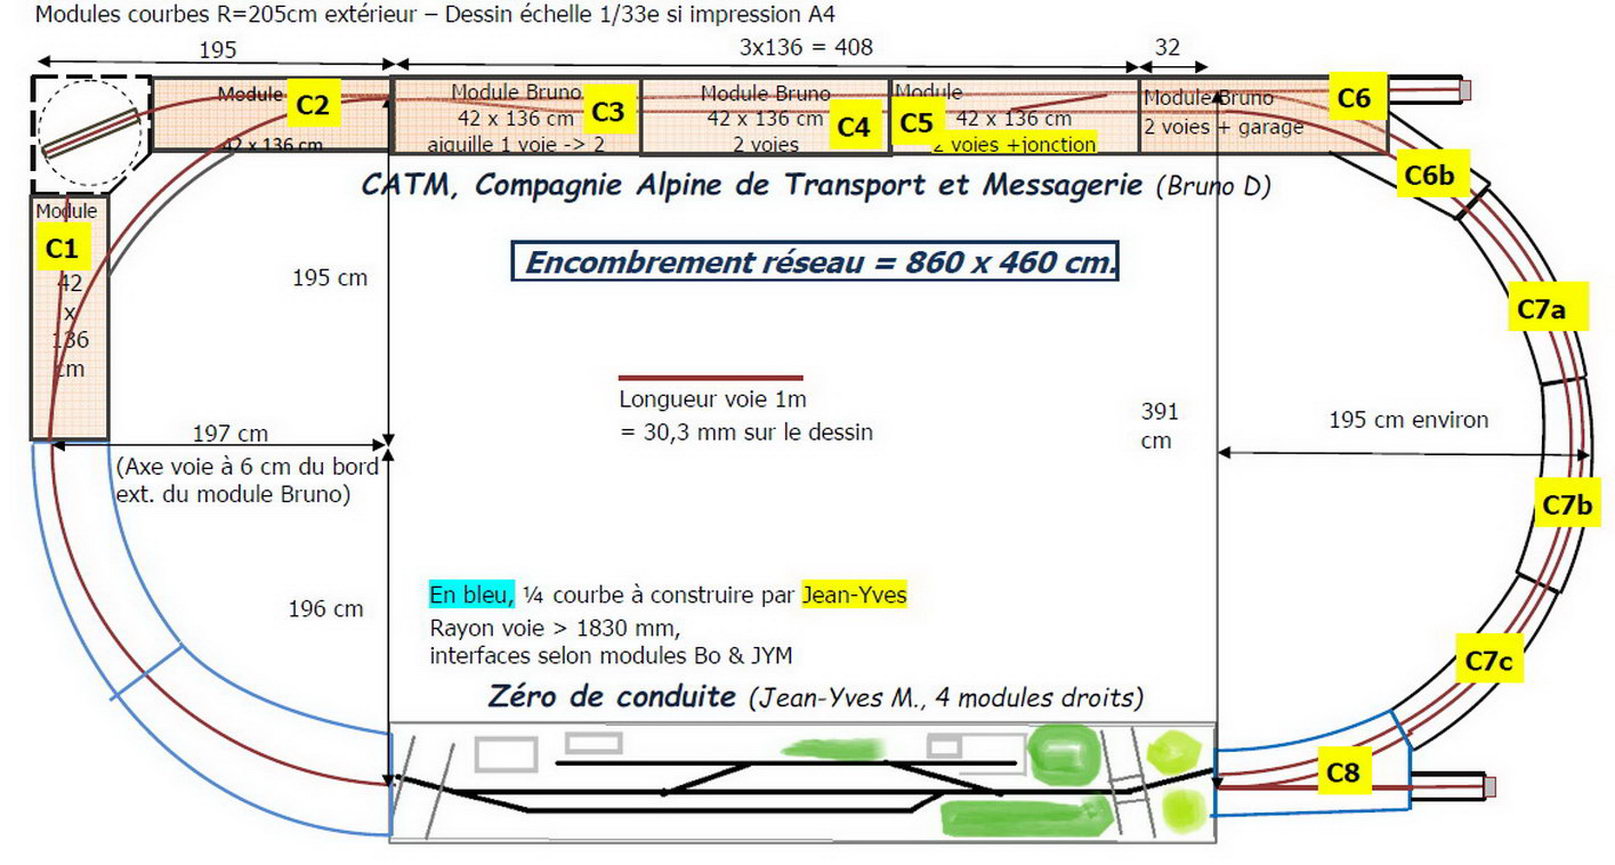 Novembre 2019 Savoie Modélisme réseau zéro CATM et Zéro de conduite (JY Mounier)